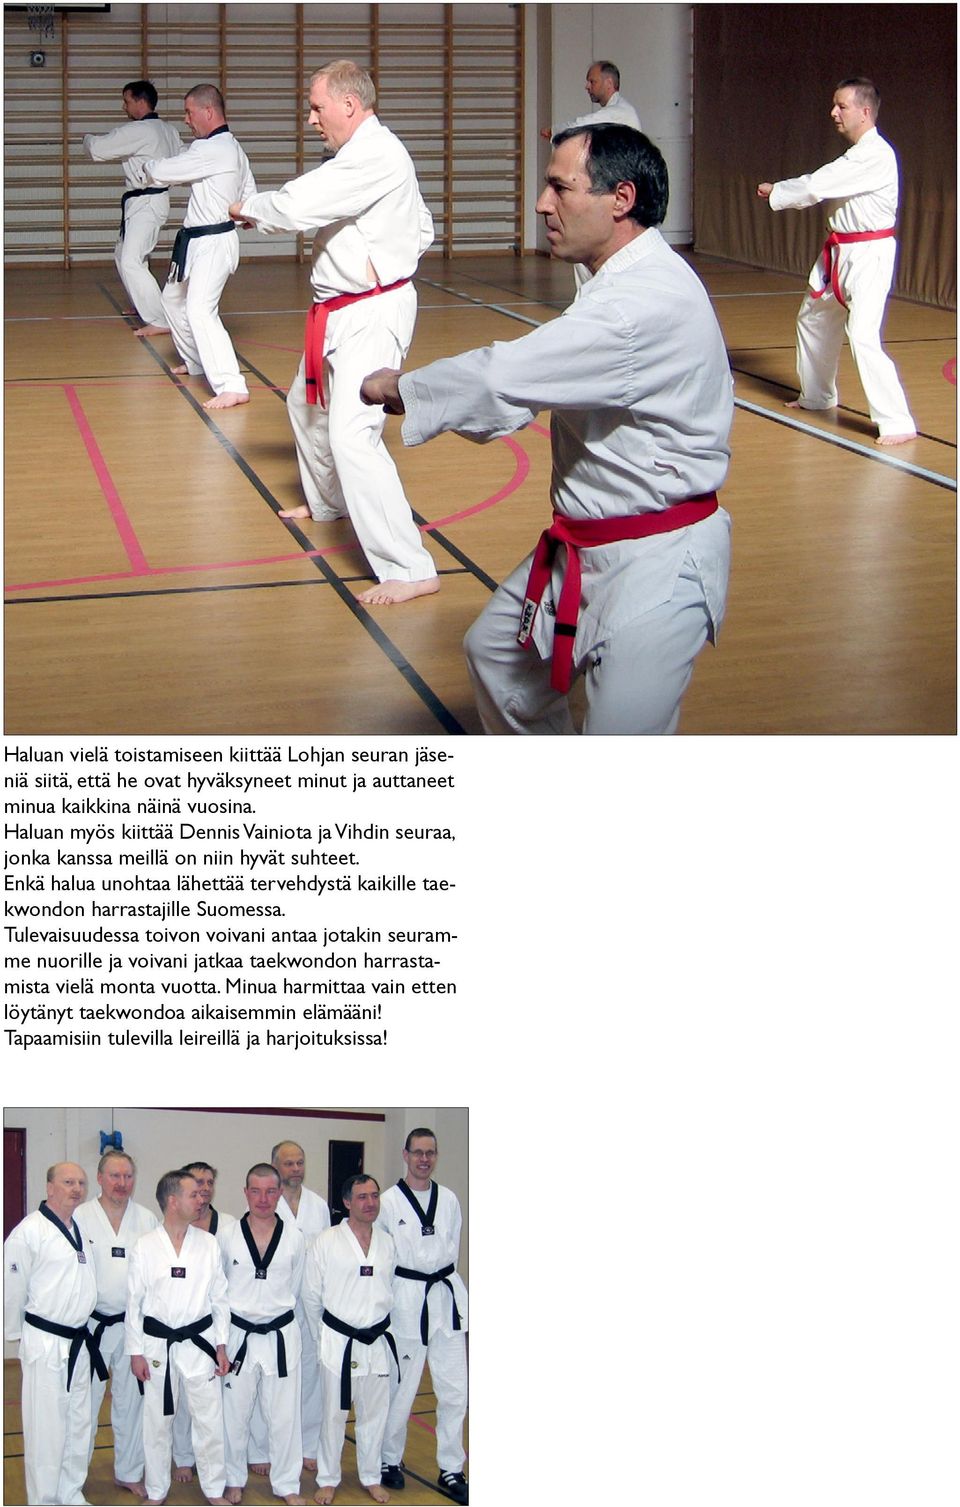 Enkä halua unohtaa lähettää tervehdystä kaikille taekwondon harrastajille Suomessa.